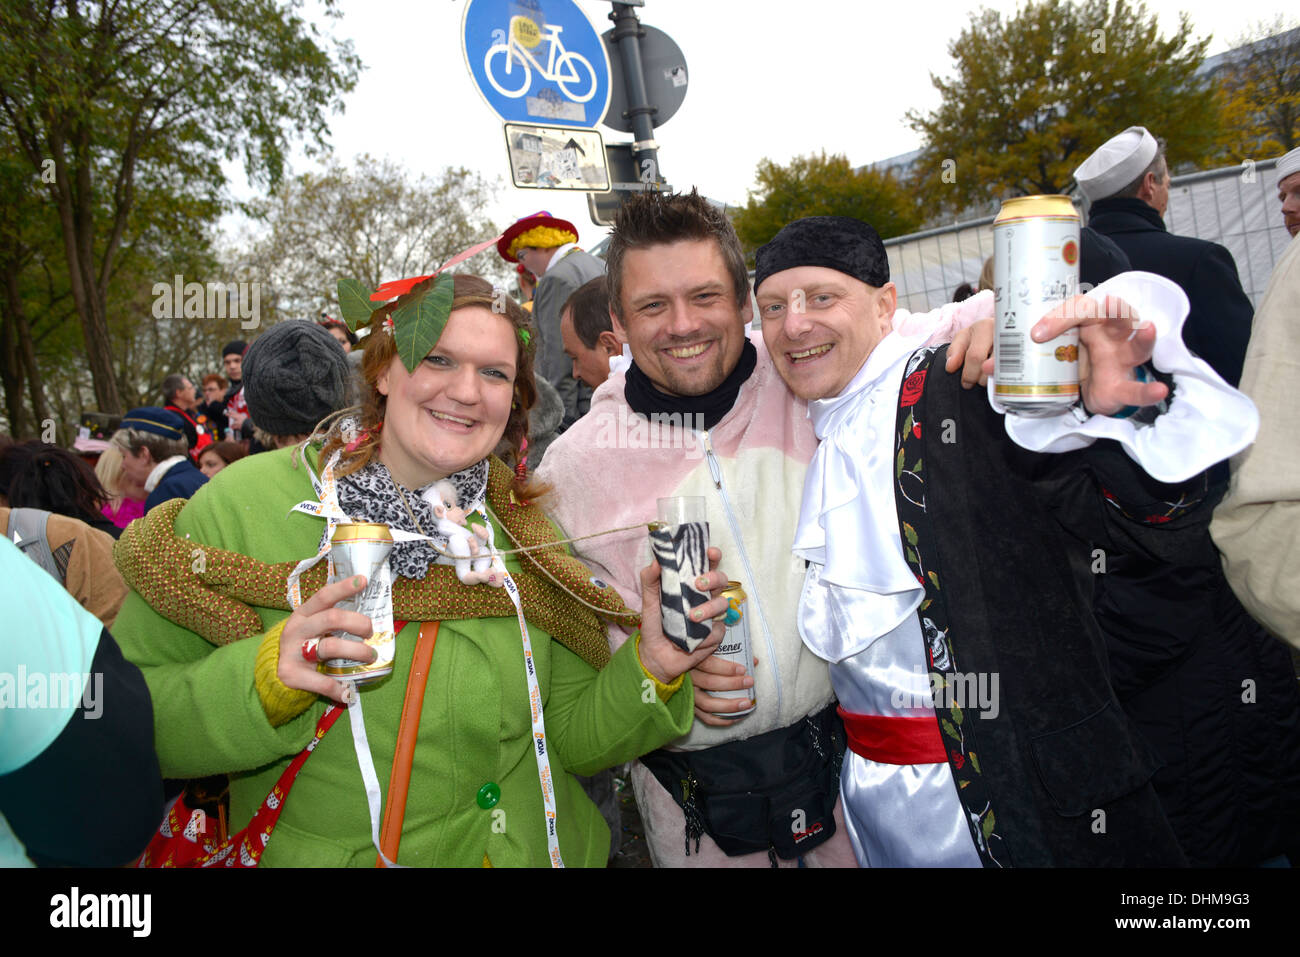 Le carnaval, qui est connu comme "Fastelovend" dans le dialecte Kölsch local, est très important à Cologne. 11:11 heures le 11 novembre Banque D'Images